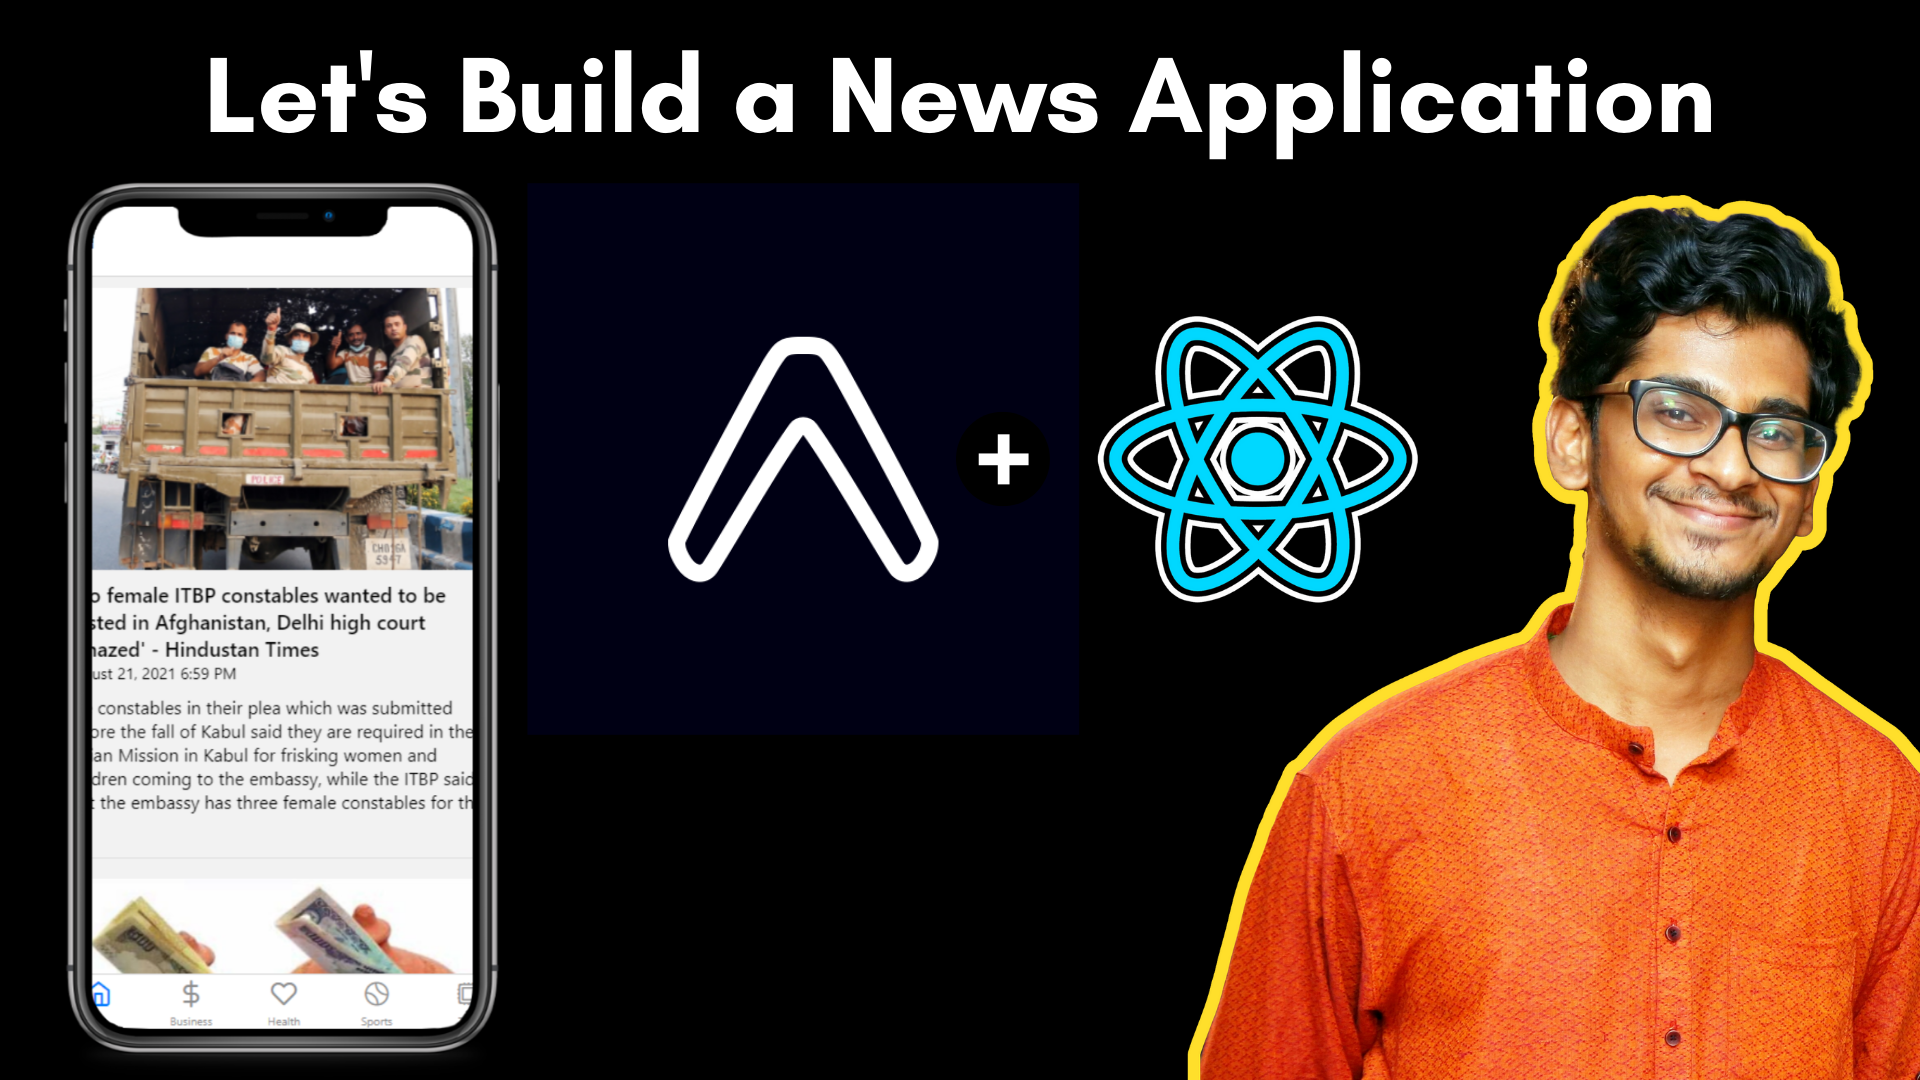 Cómo crear una aplicación Android de noticias usando React Native y Native Base